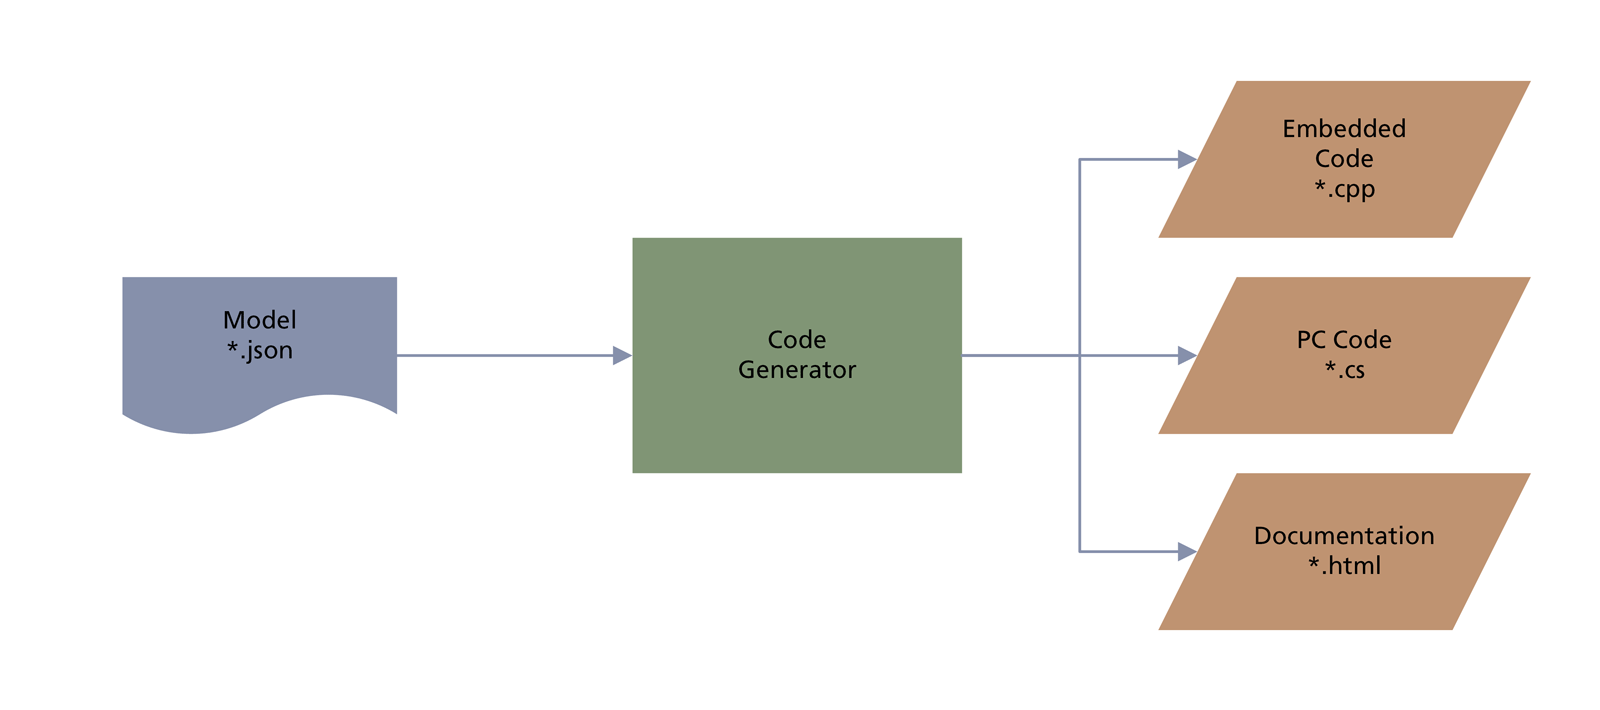 Code Generator Block Schematic